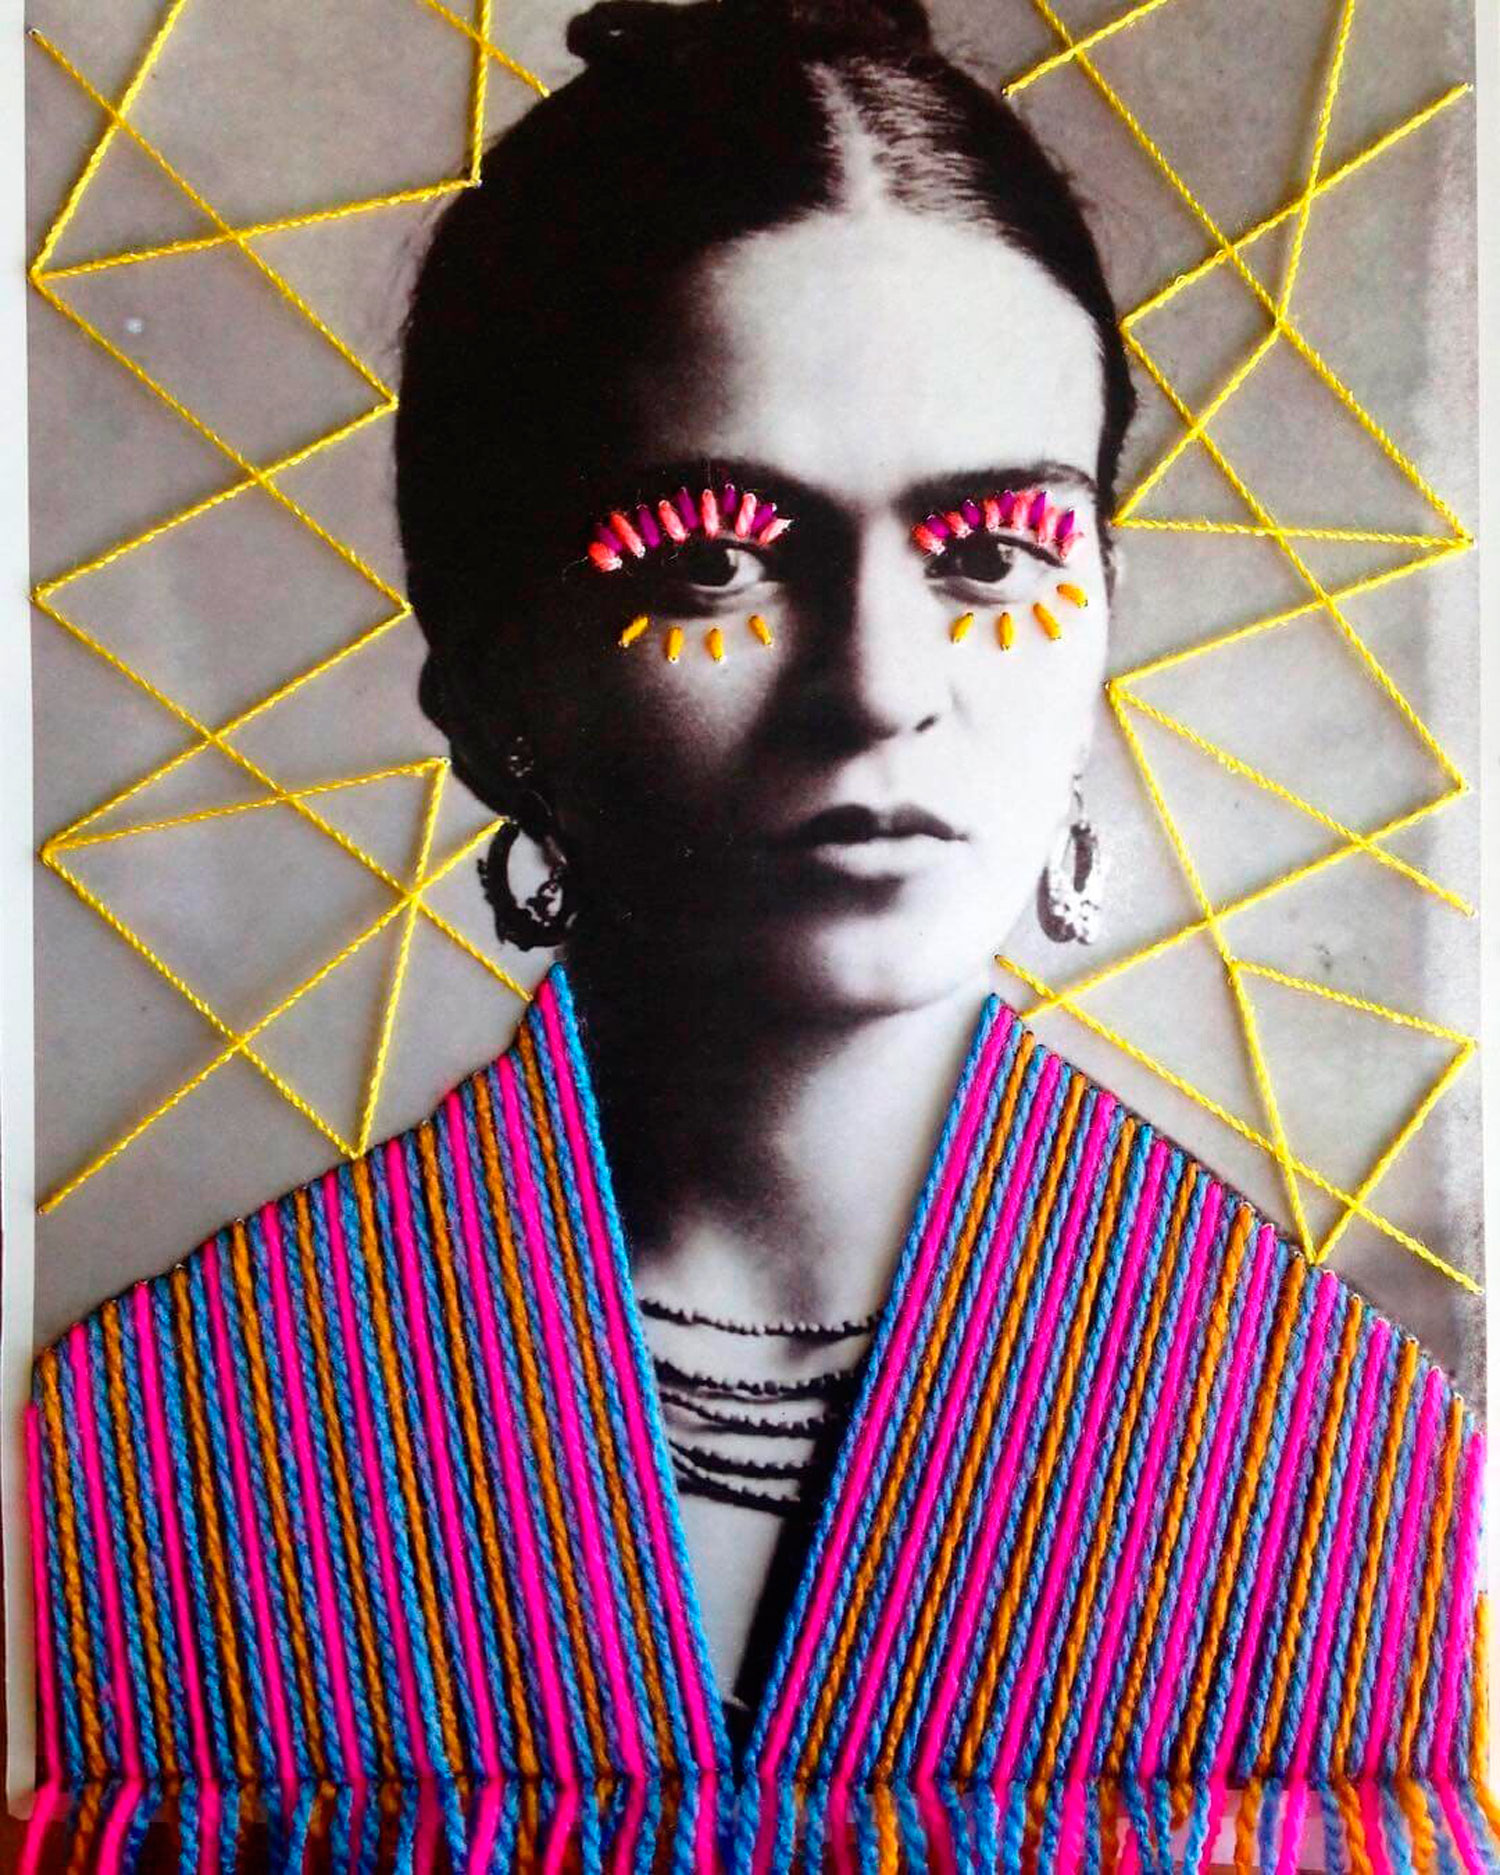 Frida Kahlo portrait by Victoria Villasana